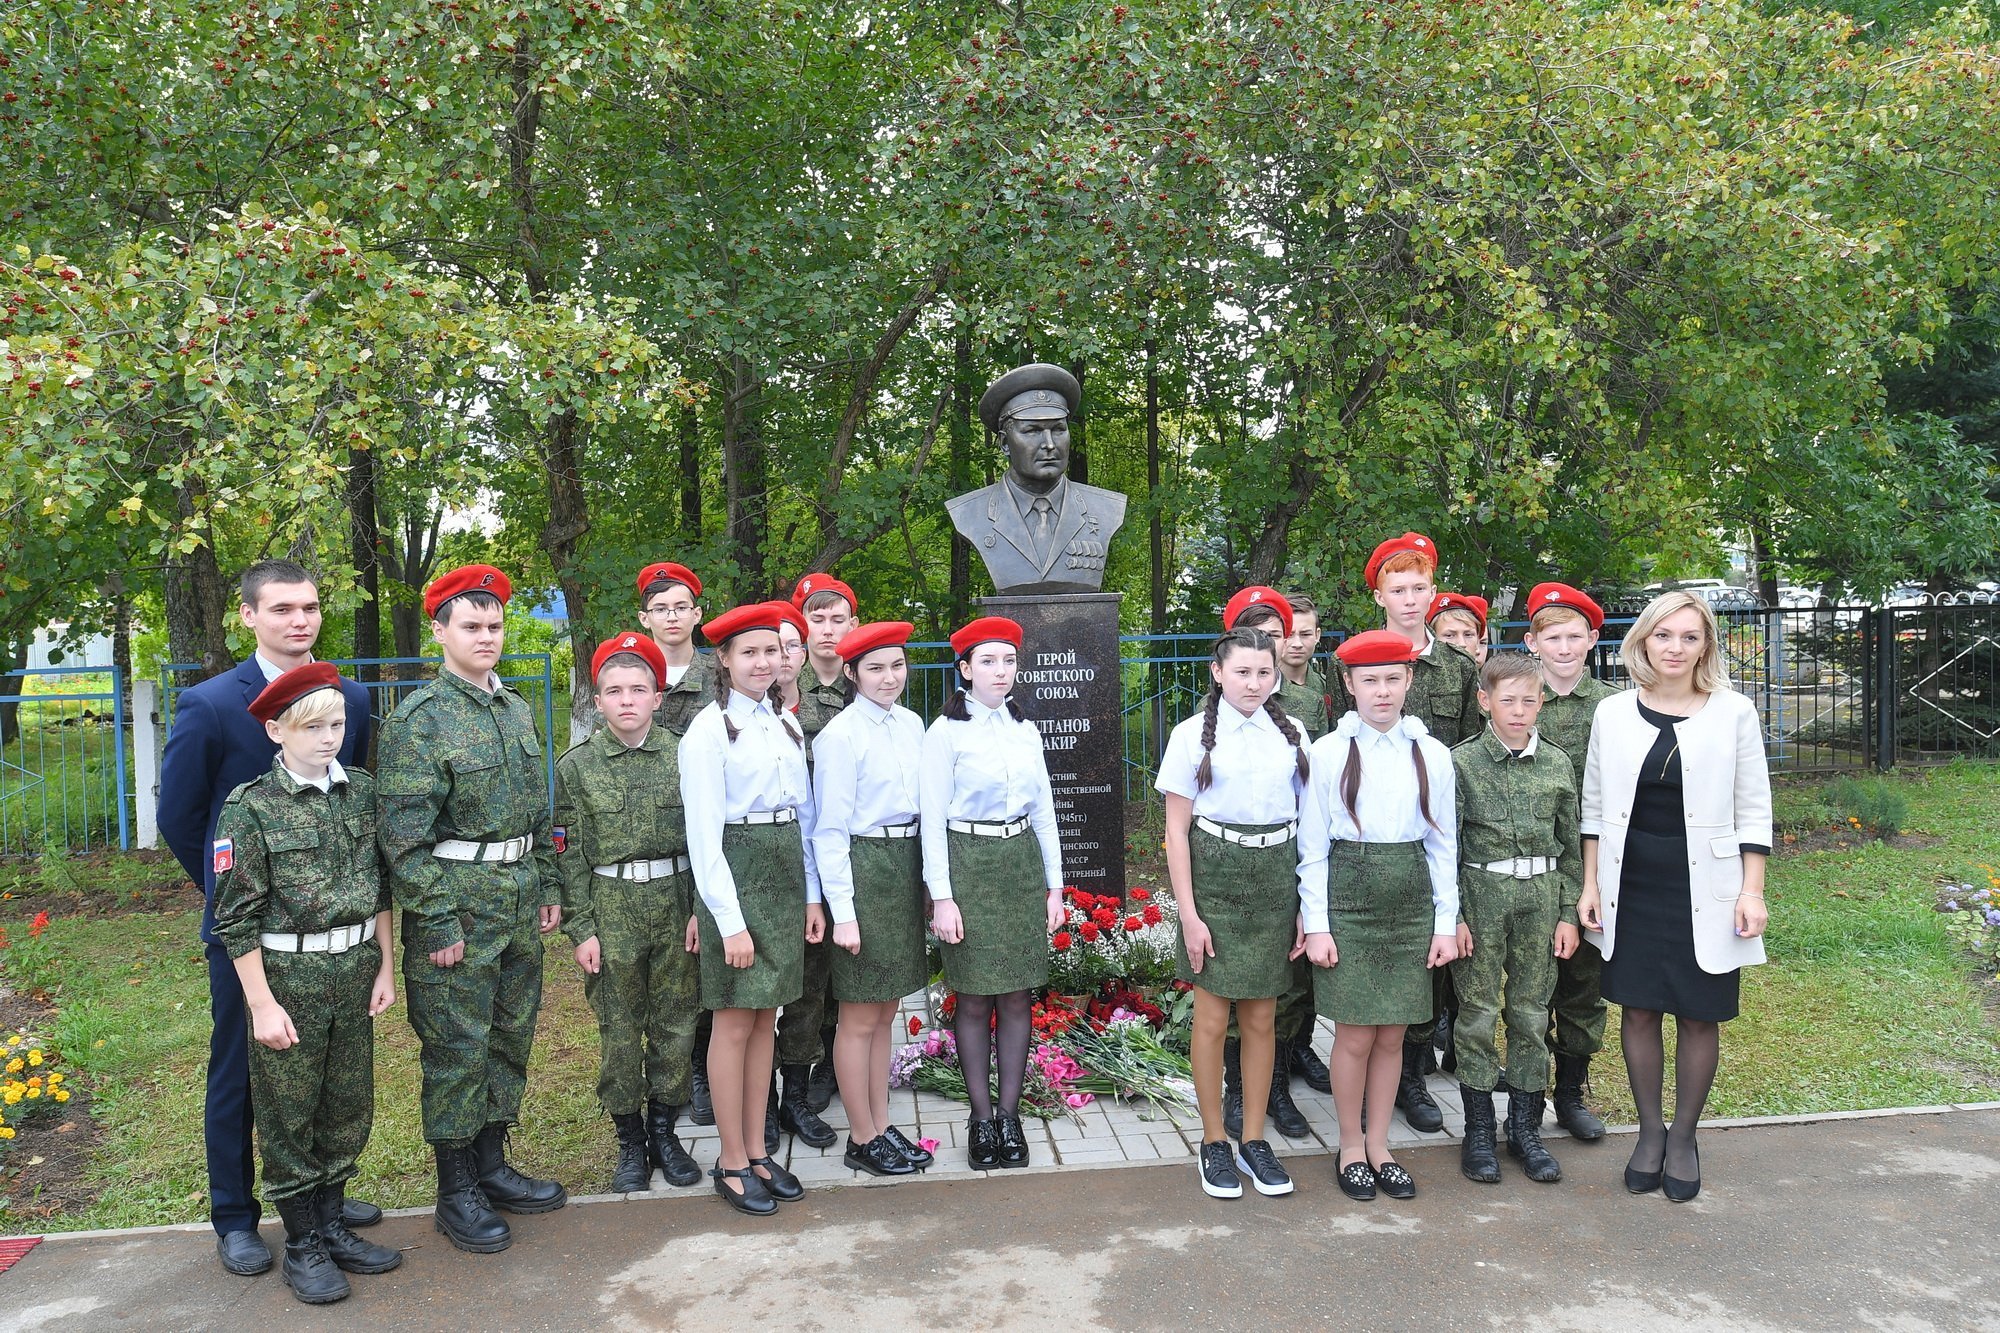 Памятник Герою Советского Союза Закиру Султанову открыли в Удмуртии